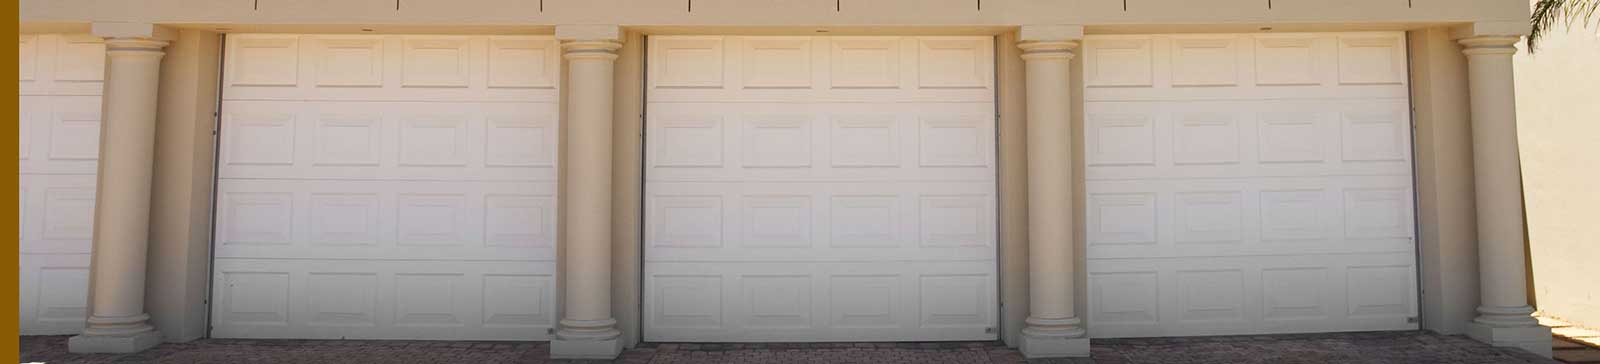 Garage Door Repair San Pablo - Professional Garage Door Care